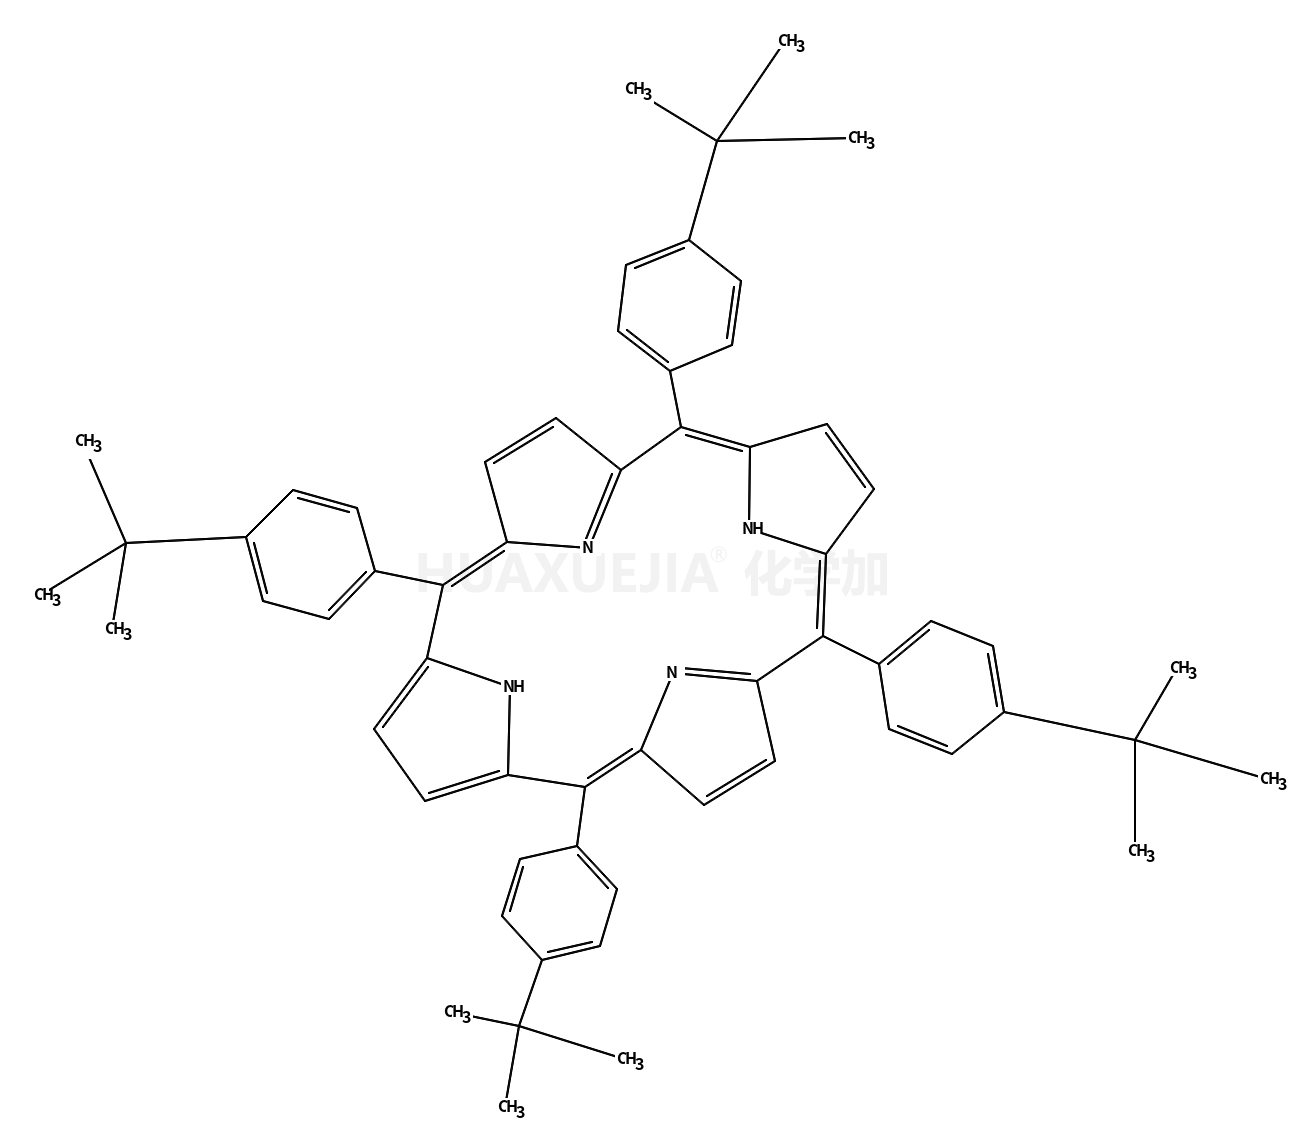 5,10,15,20-Tetrakis[4-(2-methyl-2-propanyl)phenyl]porphyri